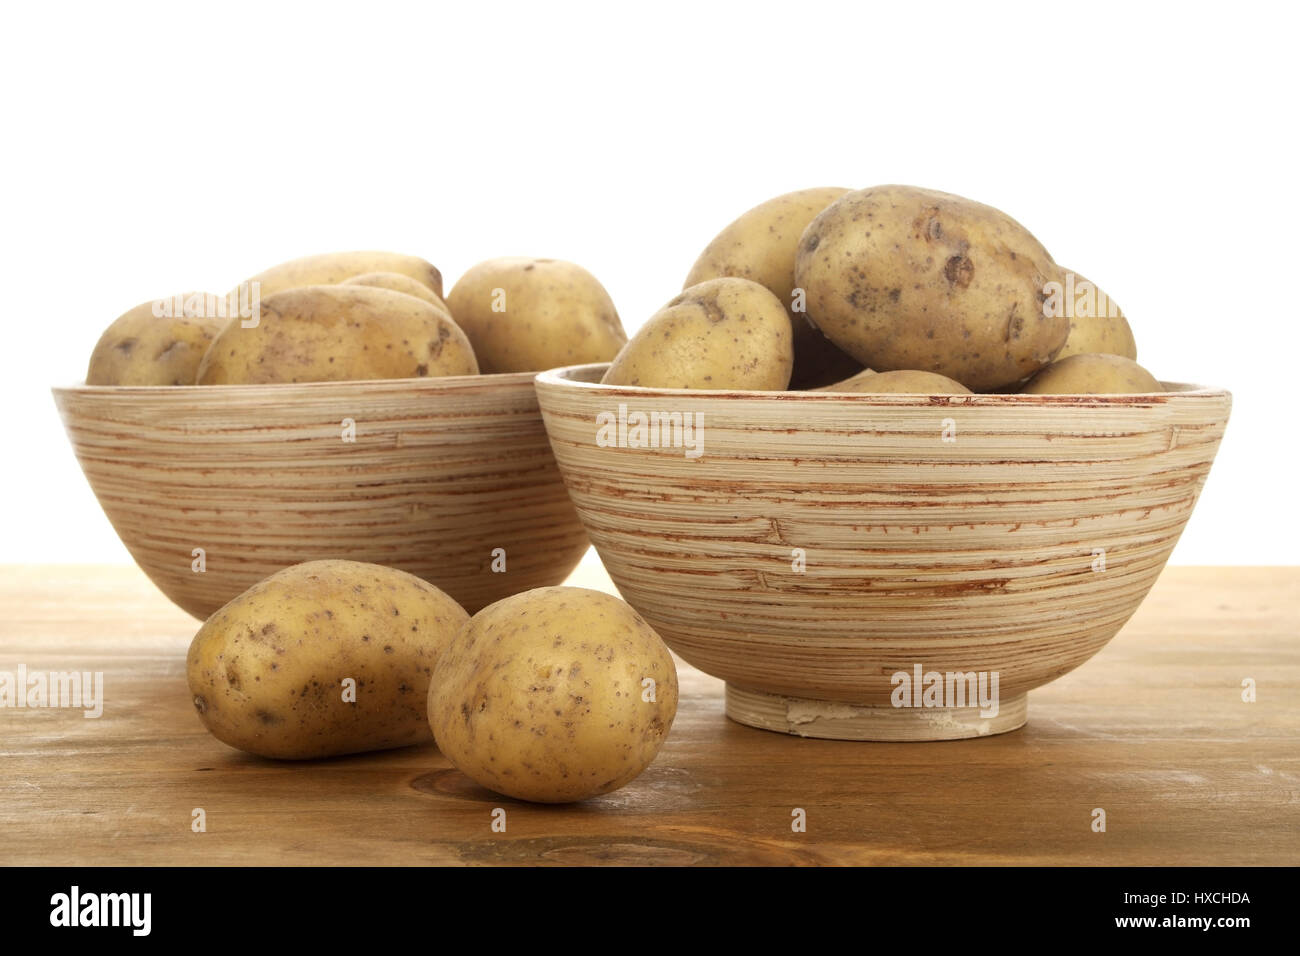 Bowls with potatoes, Schalen mit Kartoffeln Stock Photo